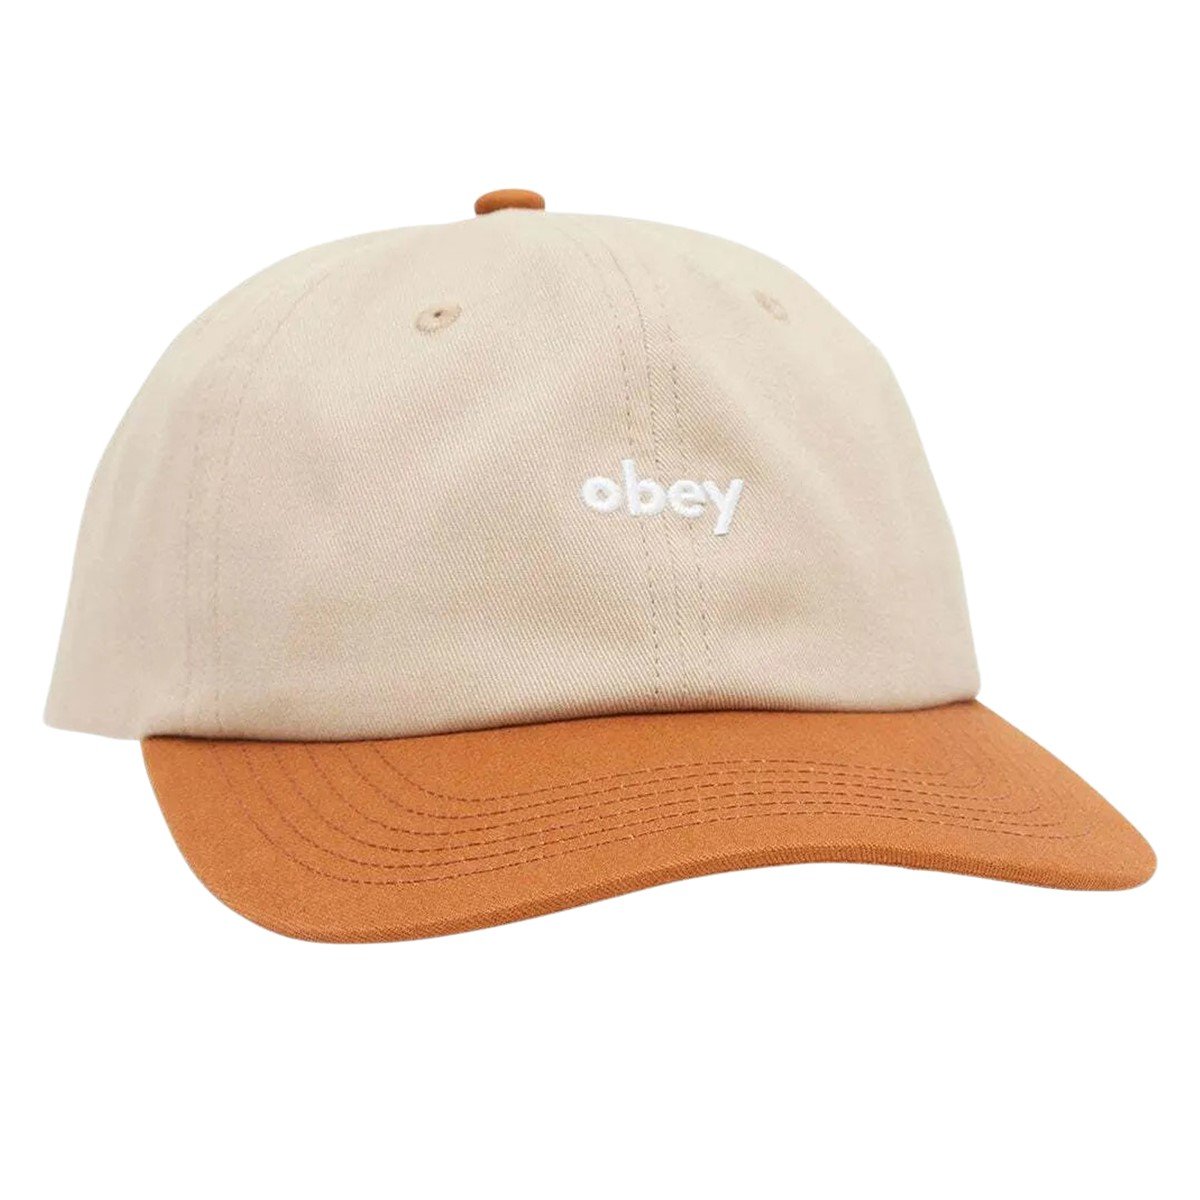 Benny IV Snapback Cap in Beige/Orange